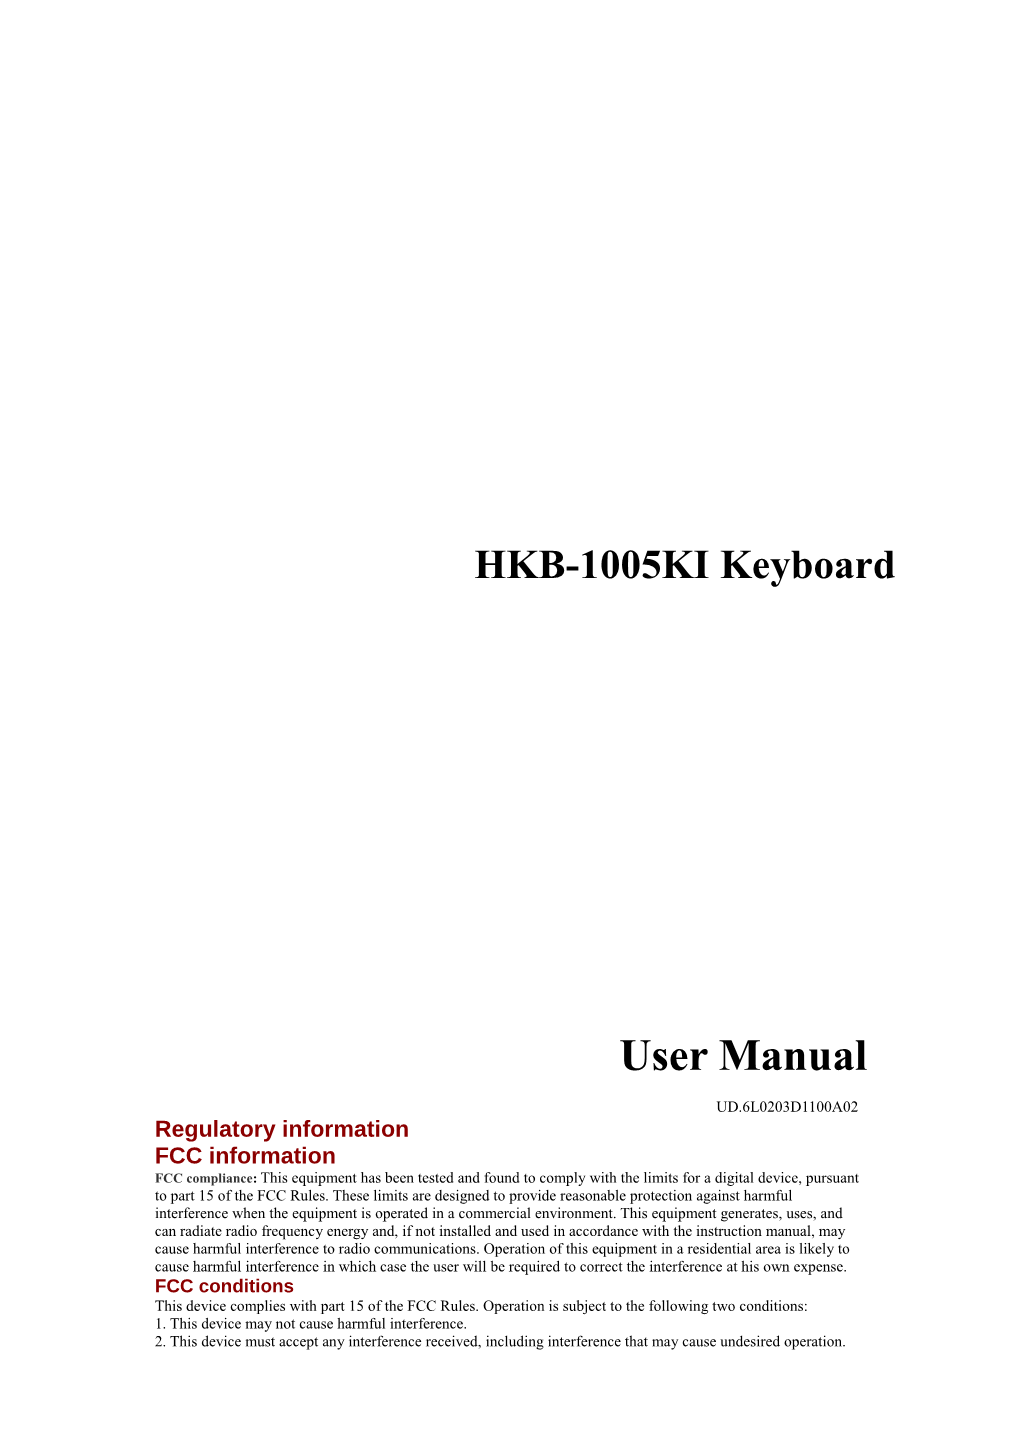 User Manual of HKB-1005KI Keyboard